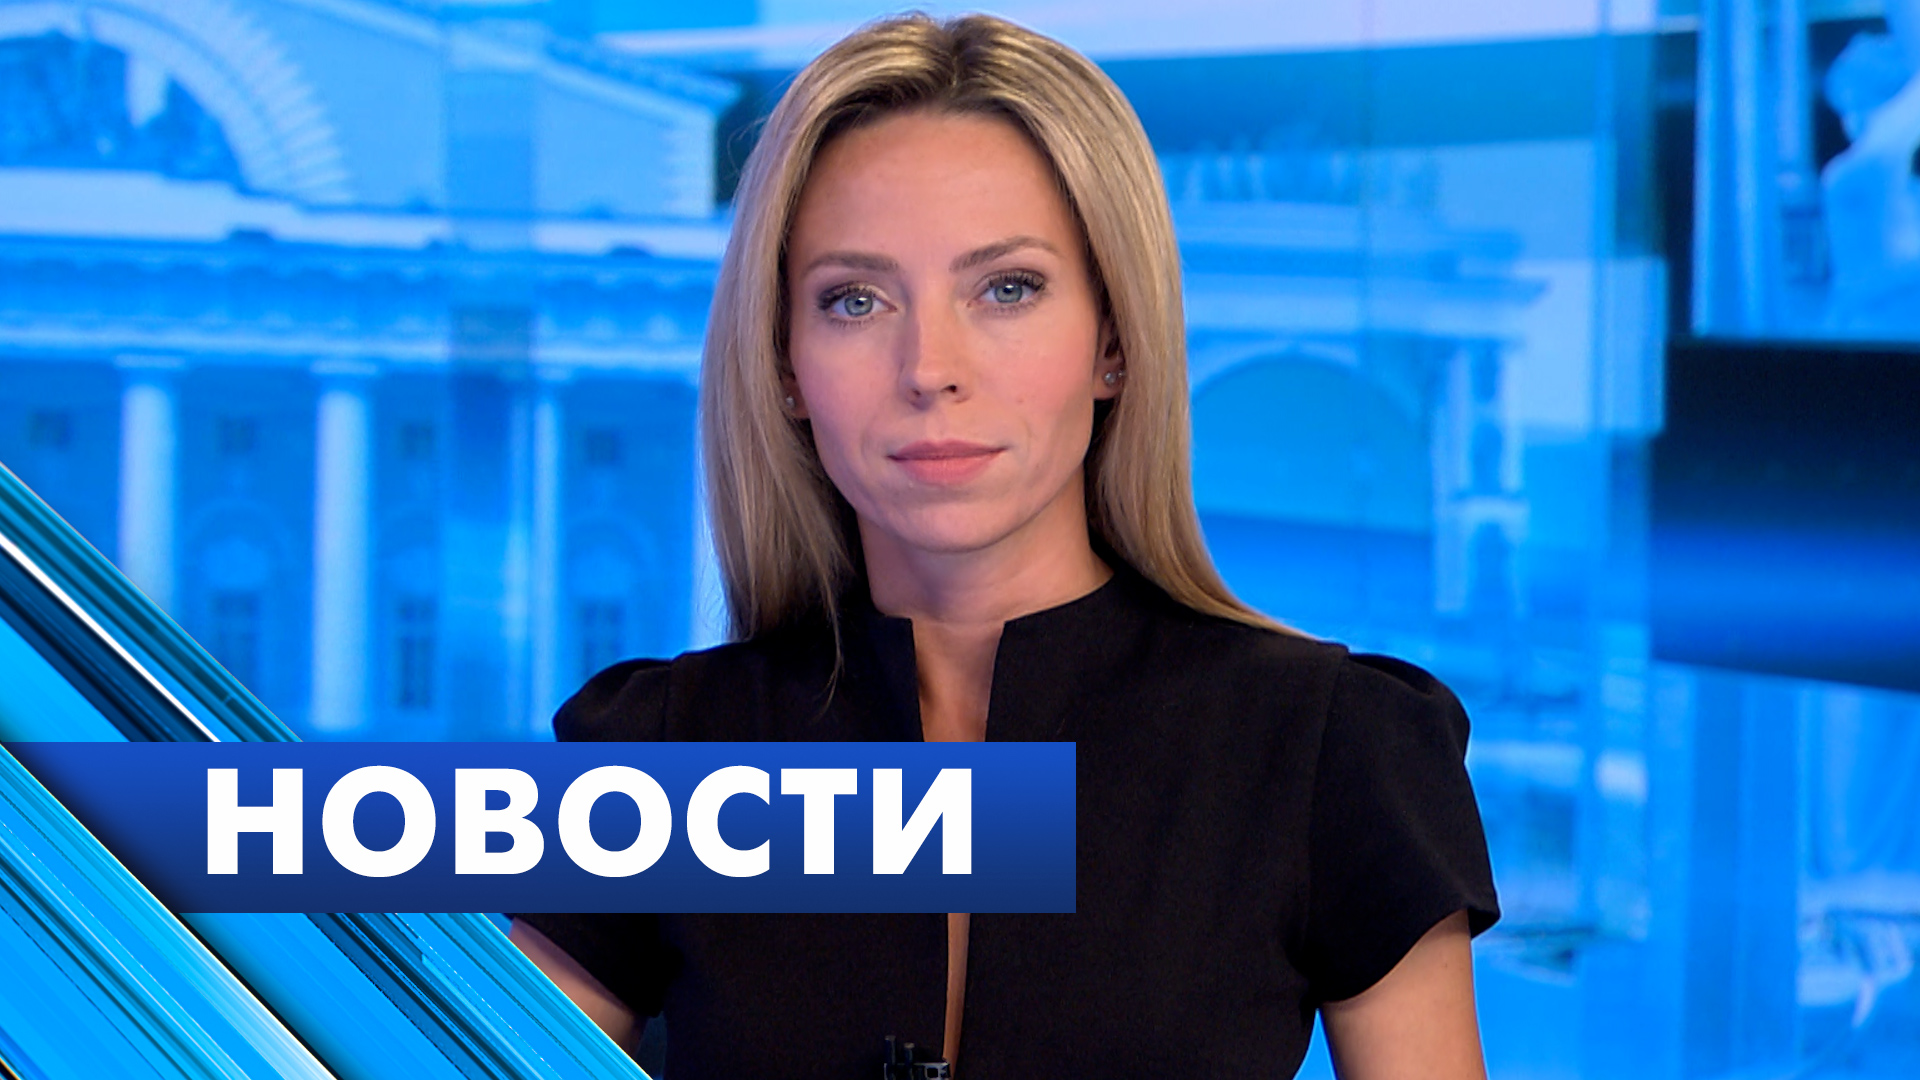 Главные новости Петербурга / 24 октября